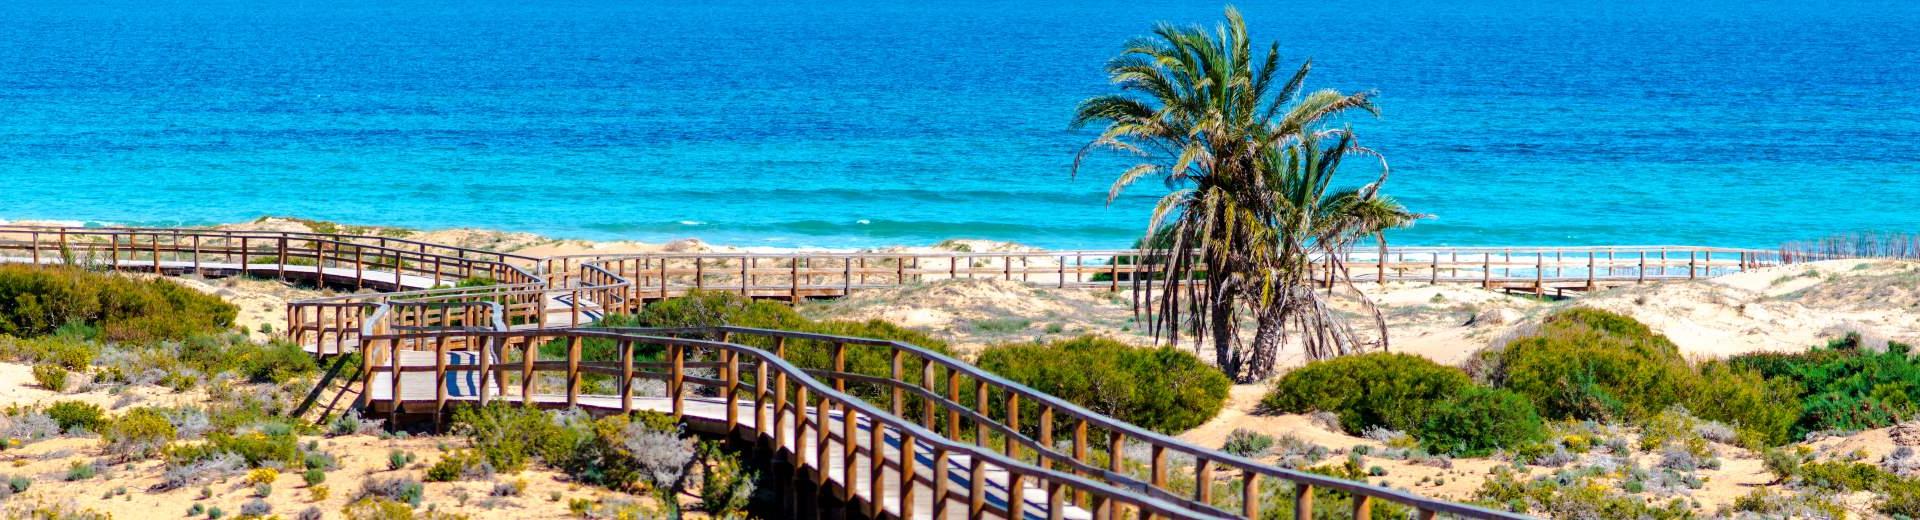 Ferienwohnungen & Ferienhäuser für Urlaub an der Costa de Valencia - Casamundo